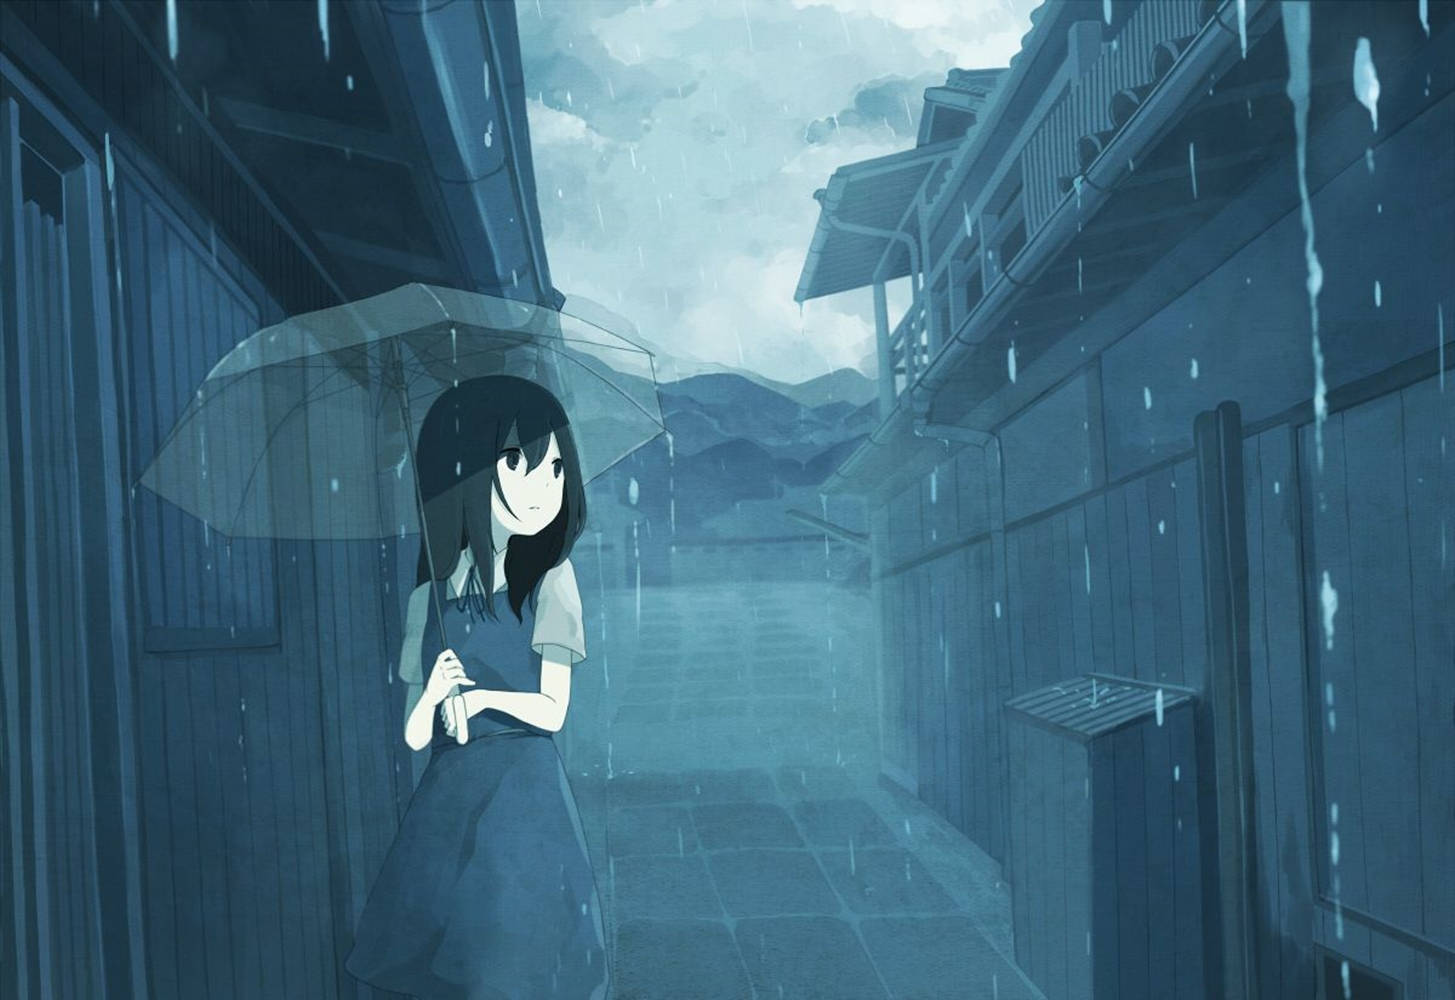 Anime Girl Sad Alone With Umbrella In Rain Wallpaper